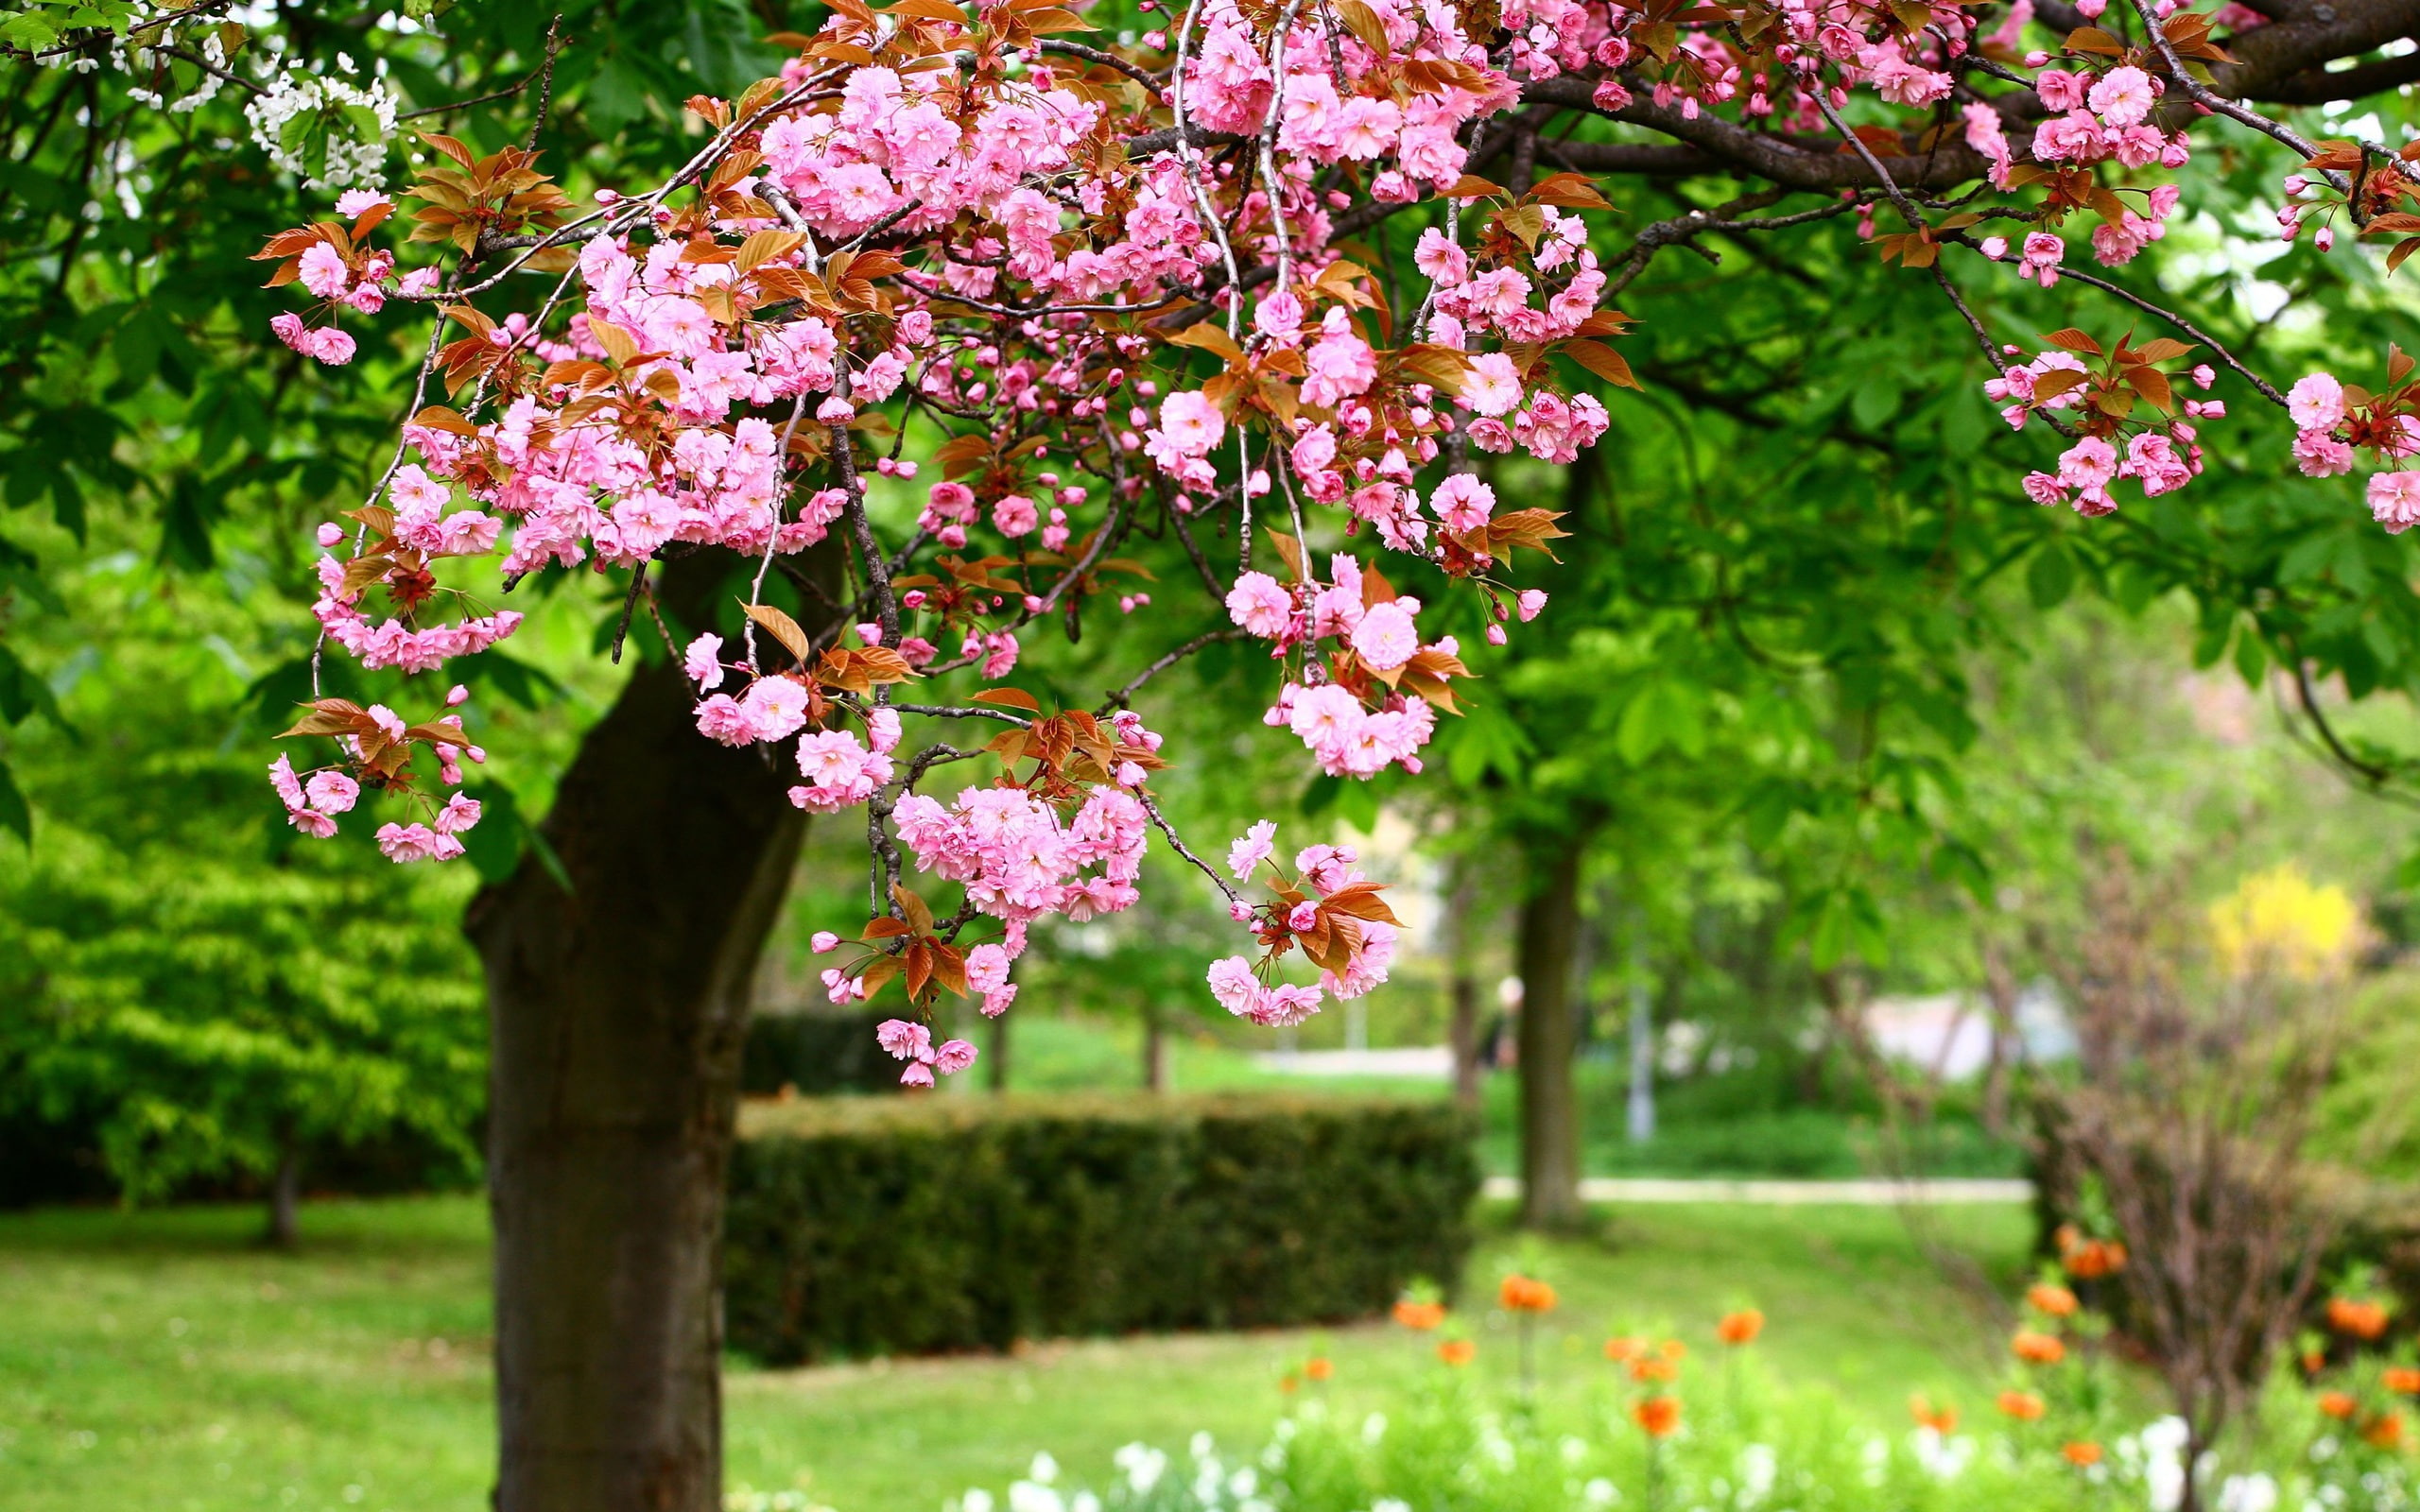 Spring park tree, pink flowers in full bloom